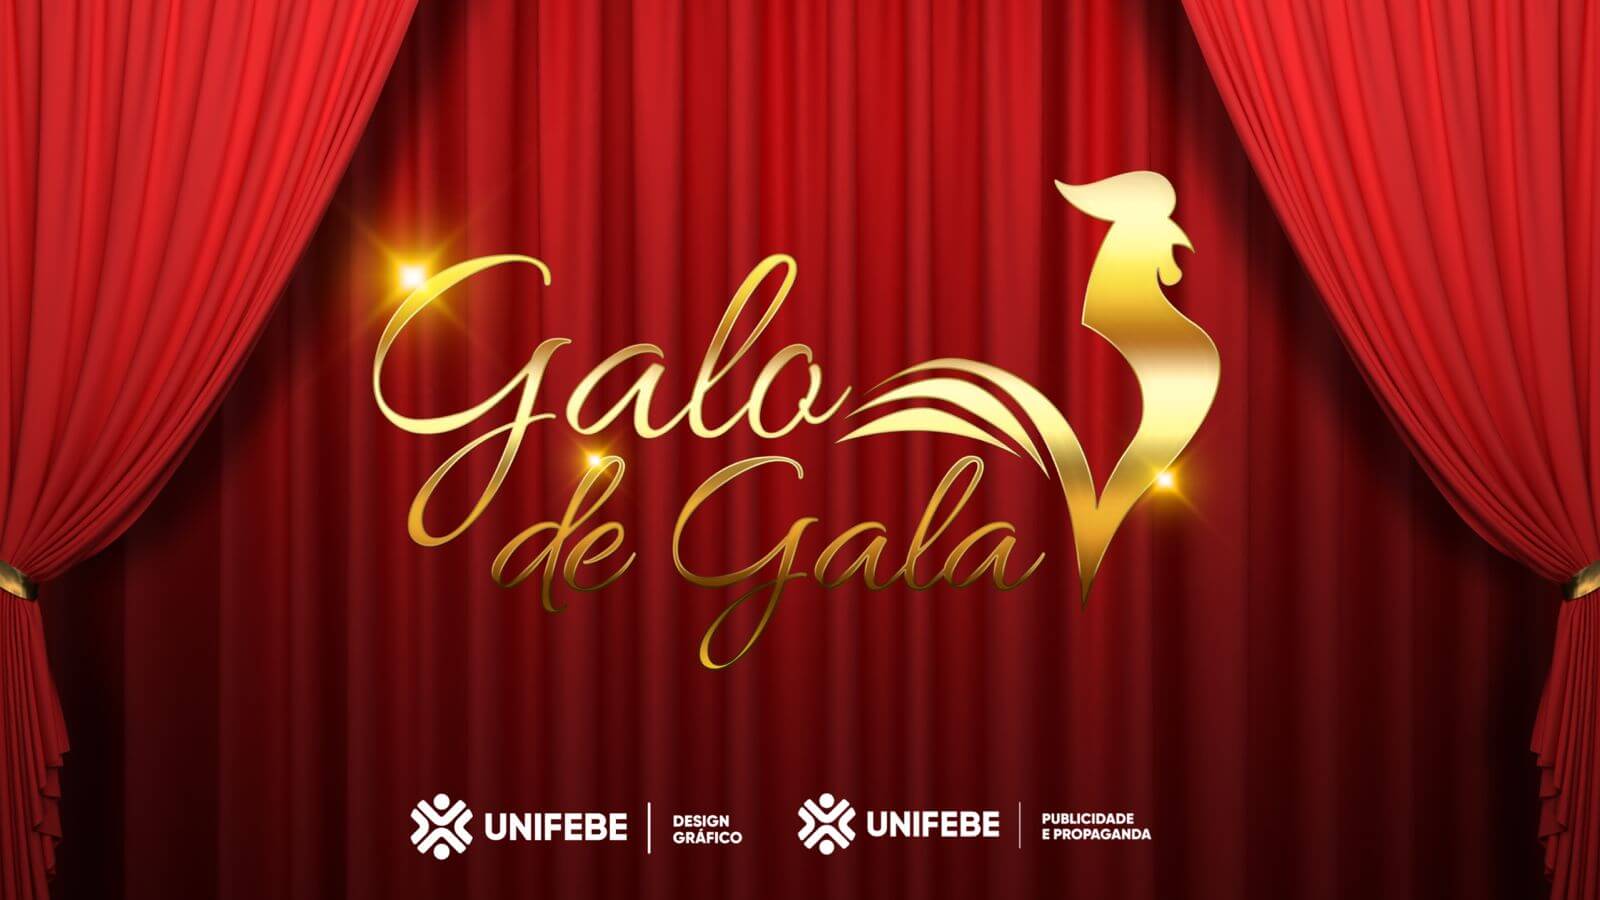 Galo de Gala UNIFEBE premiará os melhores documentários sobre os pontos turísticos de Brusque